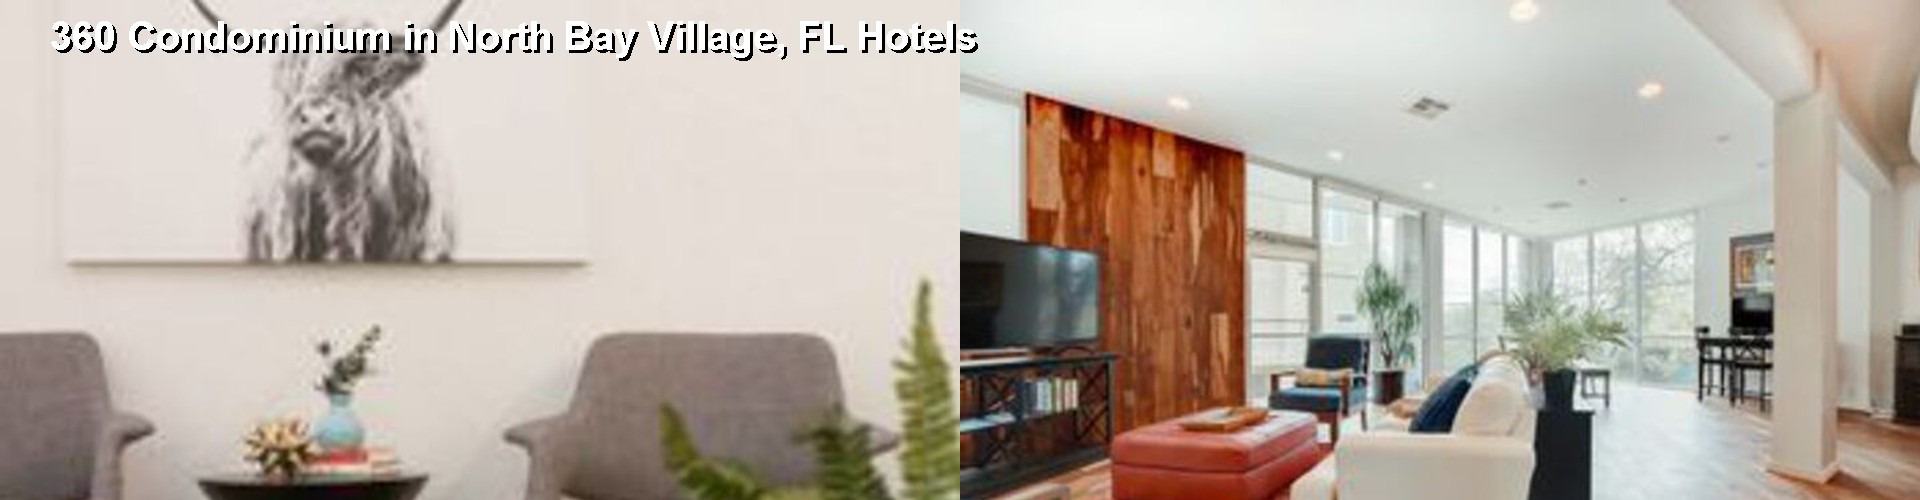 5 Best Hotels near 360 Condominium in North Bay Village, FL